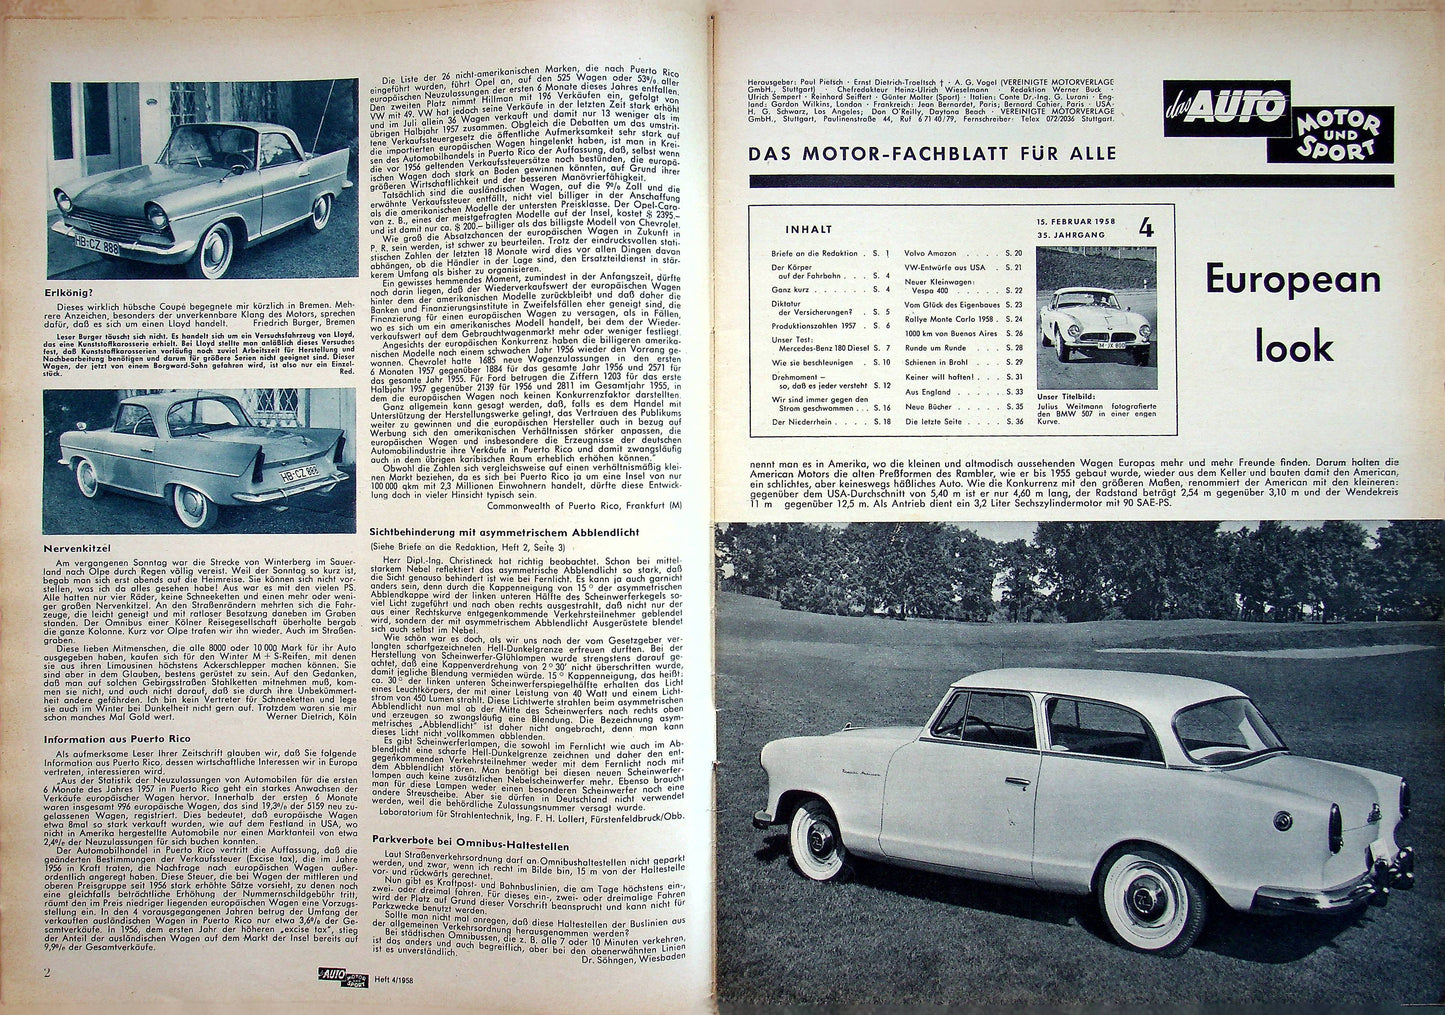 Auto Motor und Sport 04/1958